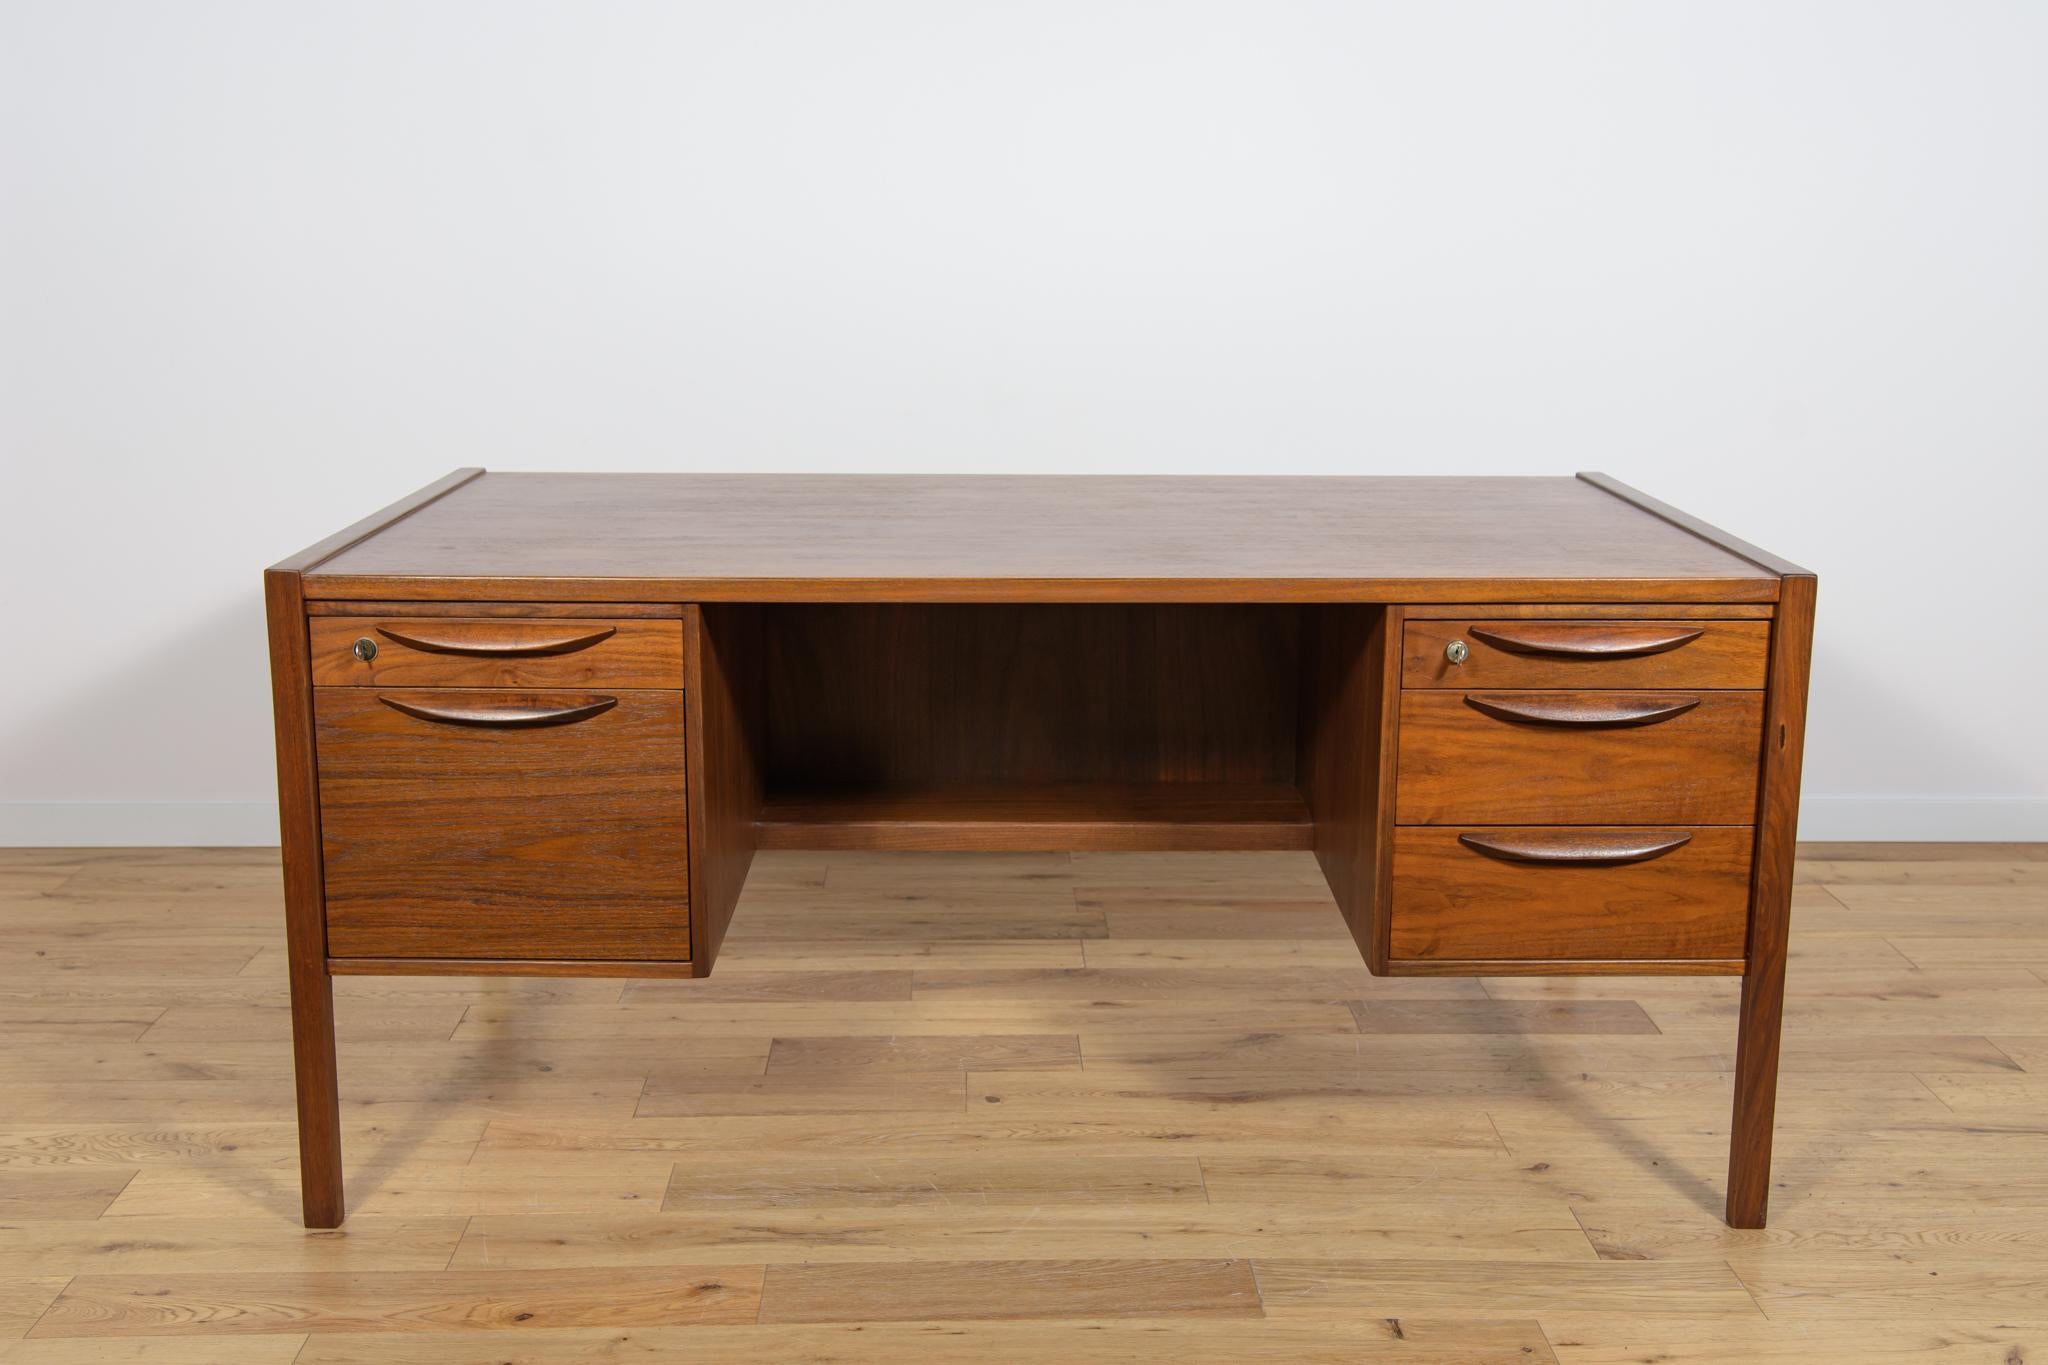 Ein großer Schreibtisch aus Walnussholz aus den 1960er Jahren, entworfen von Jens Risom für die amerikanische Manufaktur Jens Risom Design. Schreibtisch mit zwei Modulen für Schubladen. Im linken Modul befinden sich zwei Schubladen, im rechten Modul